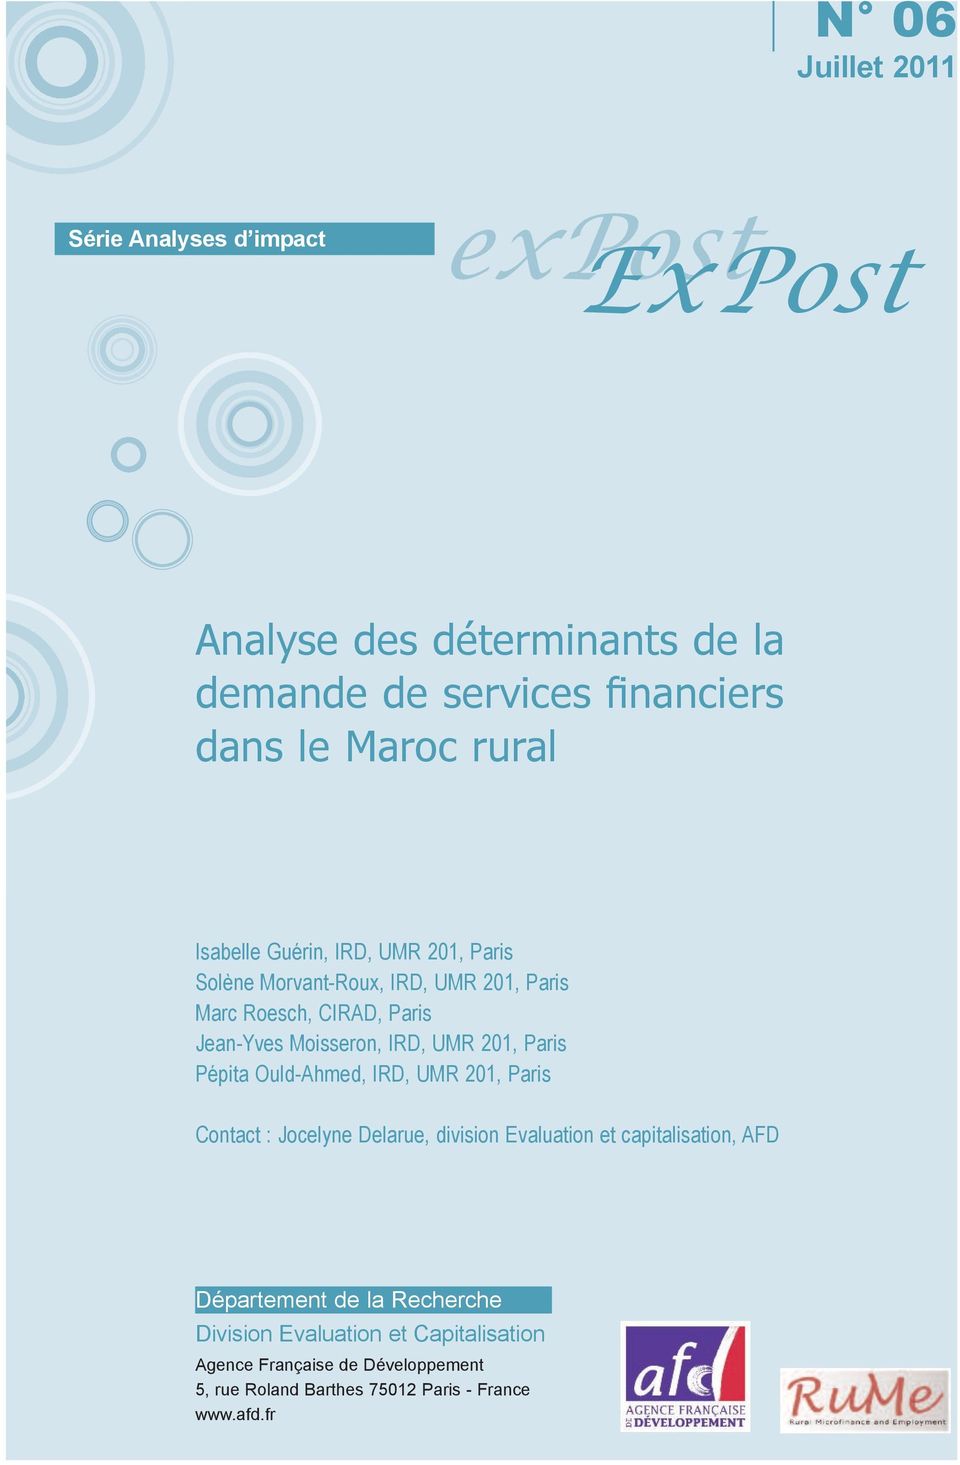 201, Paris Pépita Ould-Ahmed, IRD, UMR 201, Paris Contact : Jocelyne Delarue, division Evaluation et capitalisation, AFD Département de